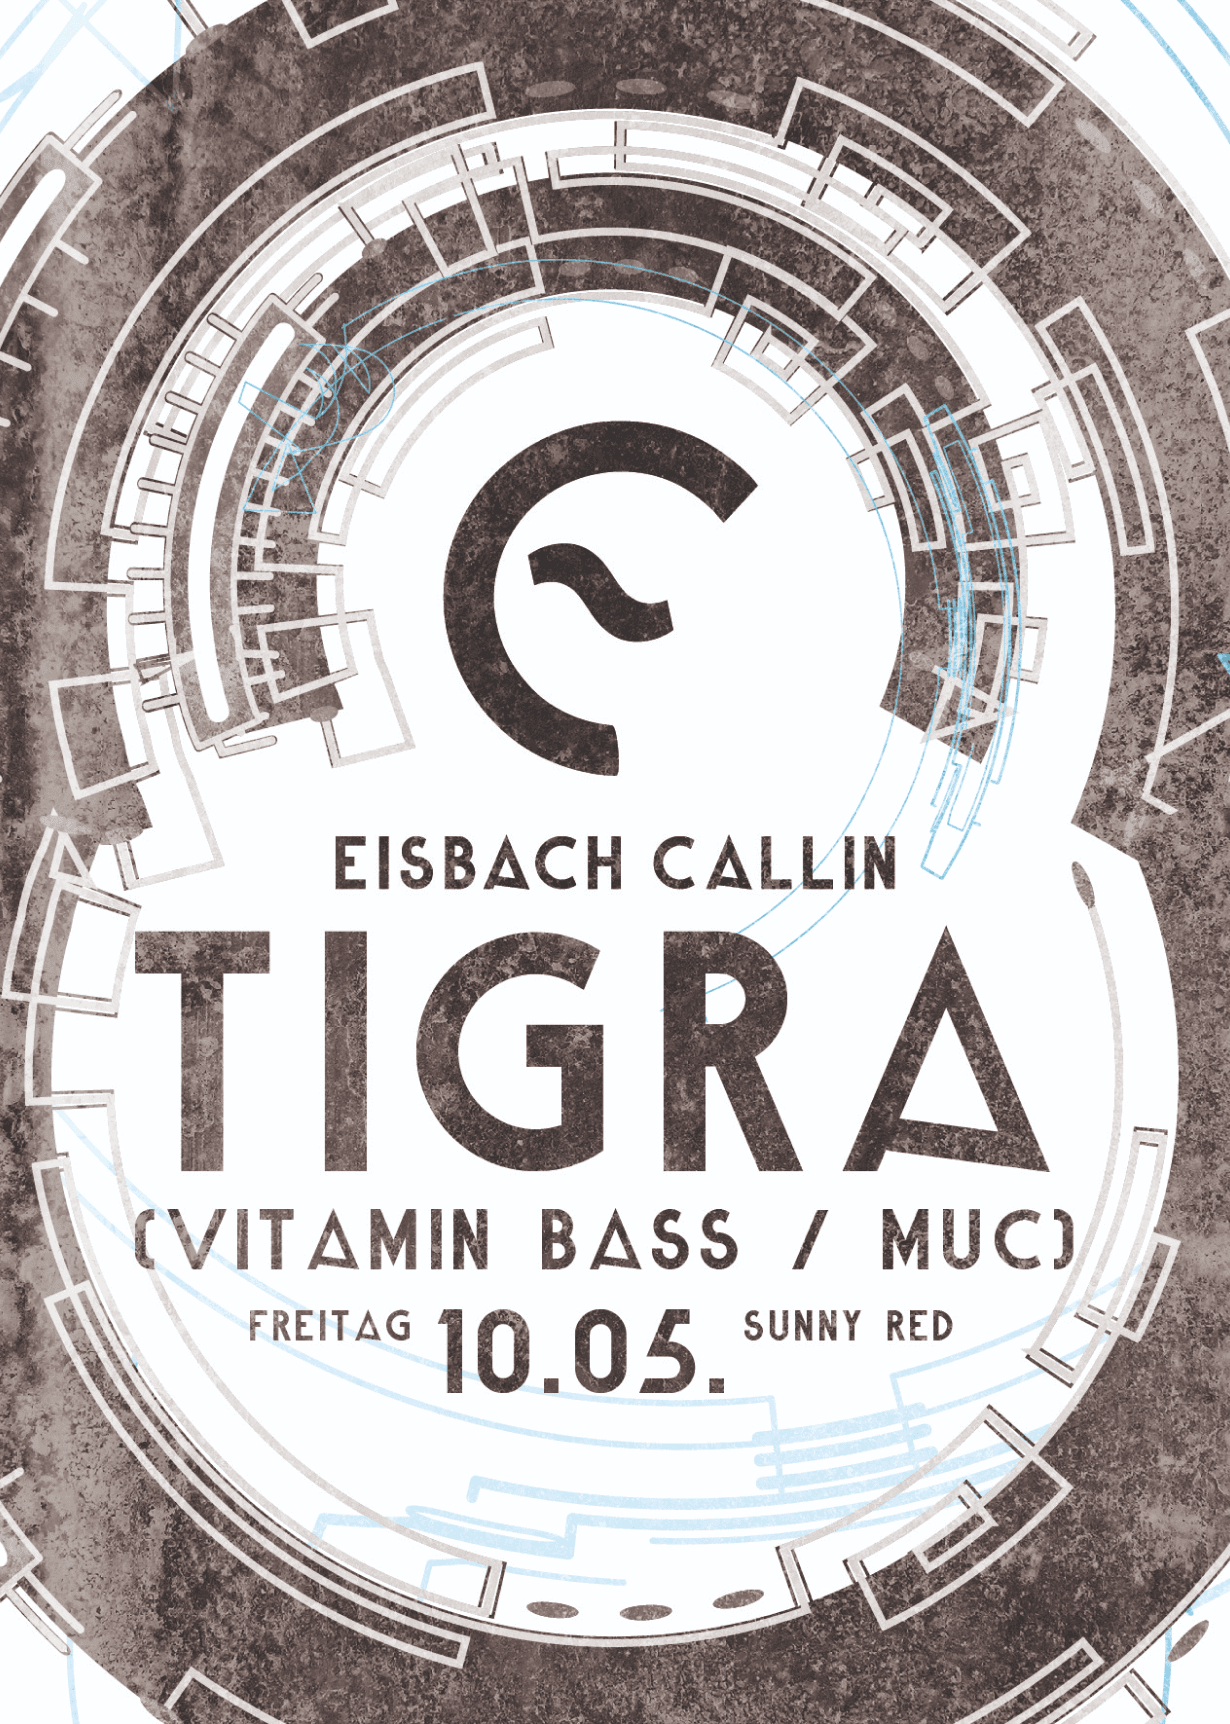 DJ Tigra (Vitamin Bass)